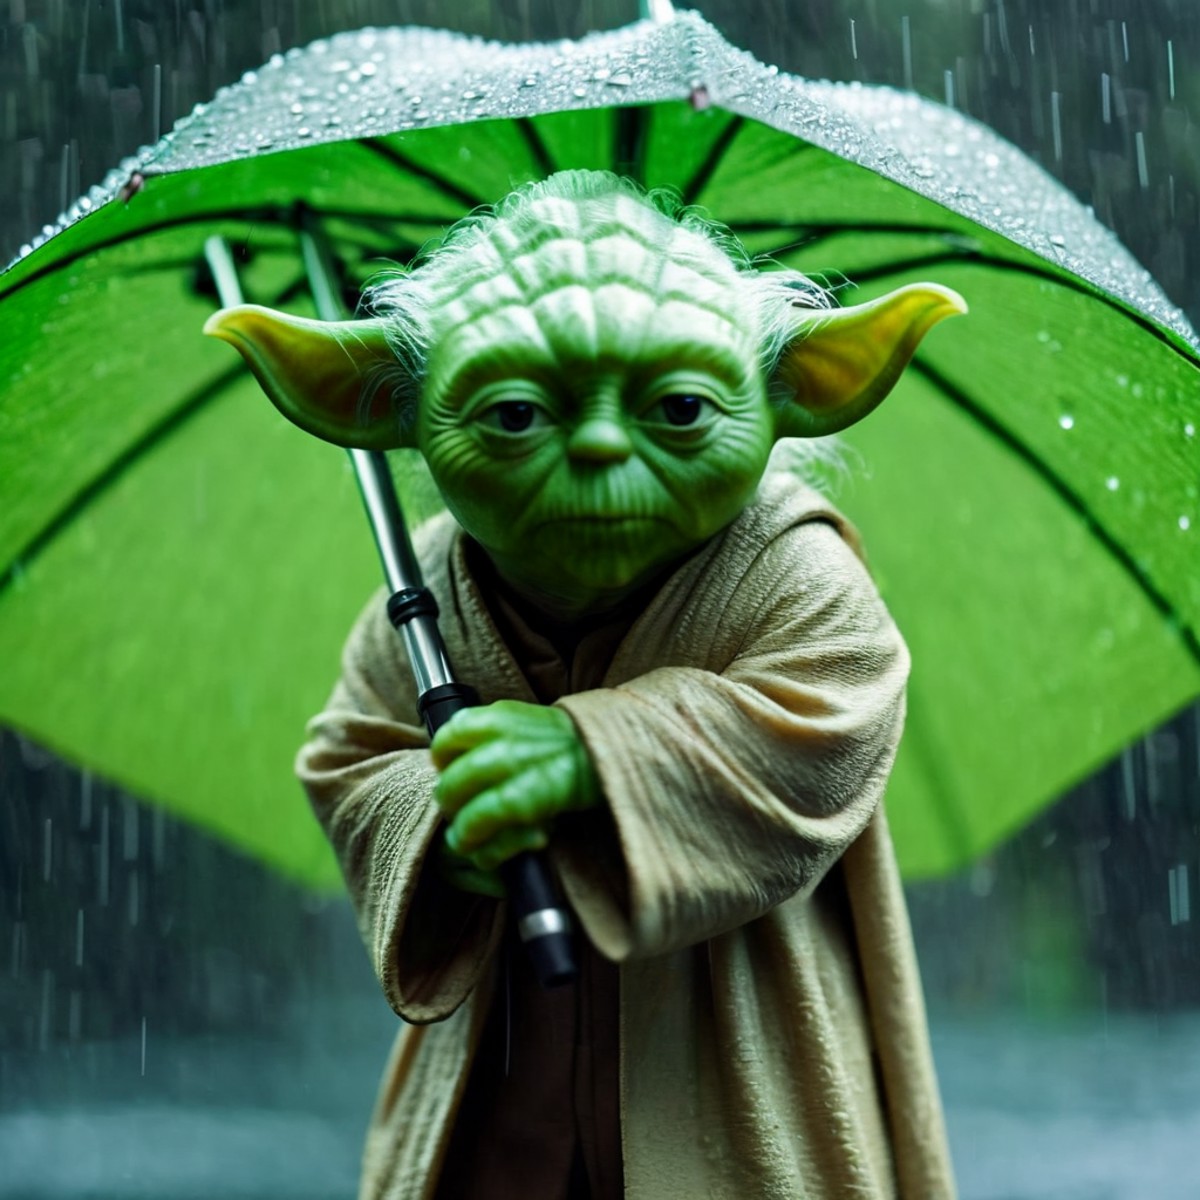 cinematic film still of  <lora:Yoda:1.2>
Yoda a green yodah holding an umbrella in the rain In Star Wars Universe, shallow...